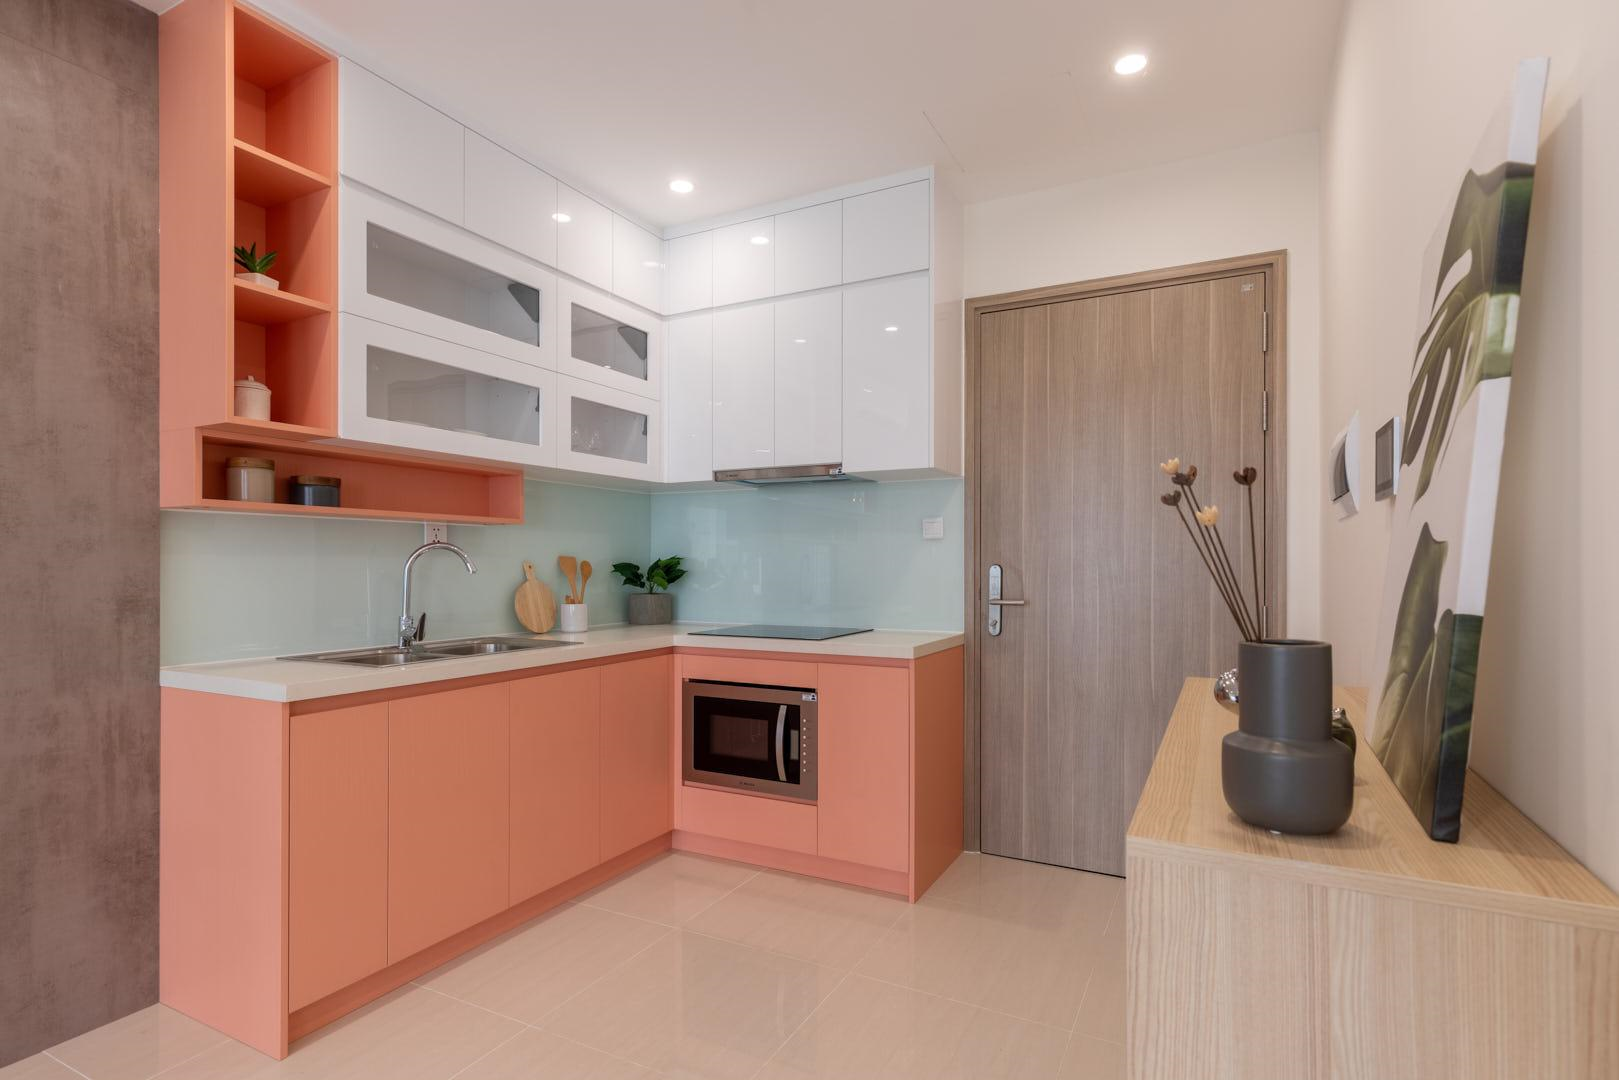 Phòng bếp được thiết kế tối giản với gam màu nổi bật